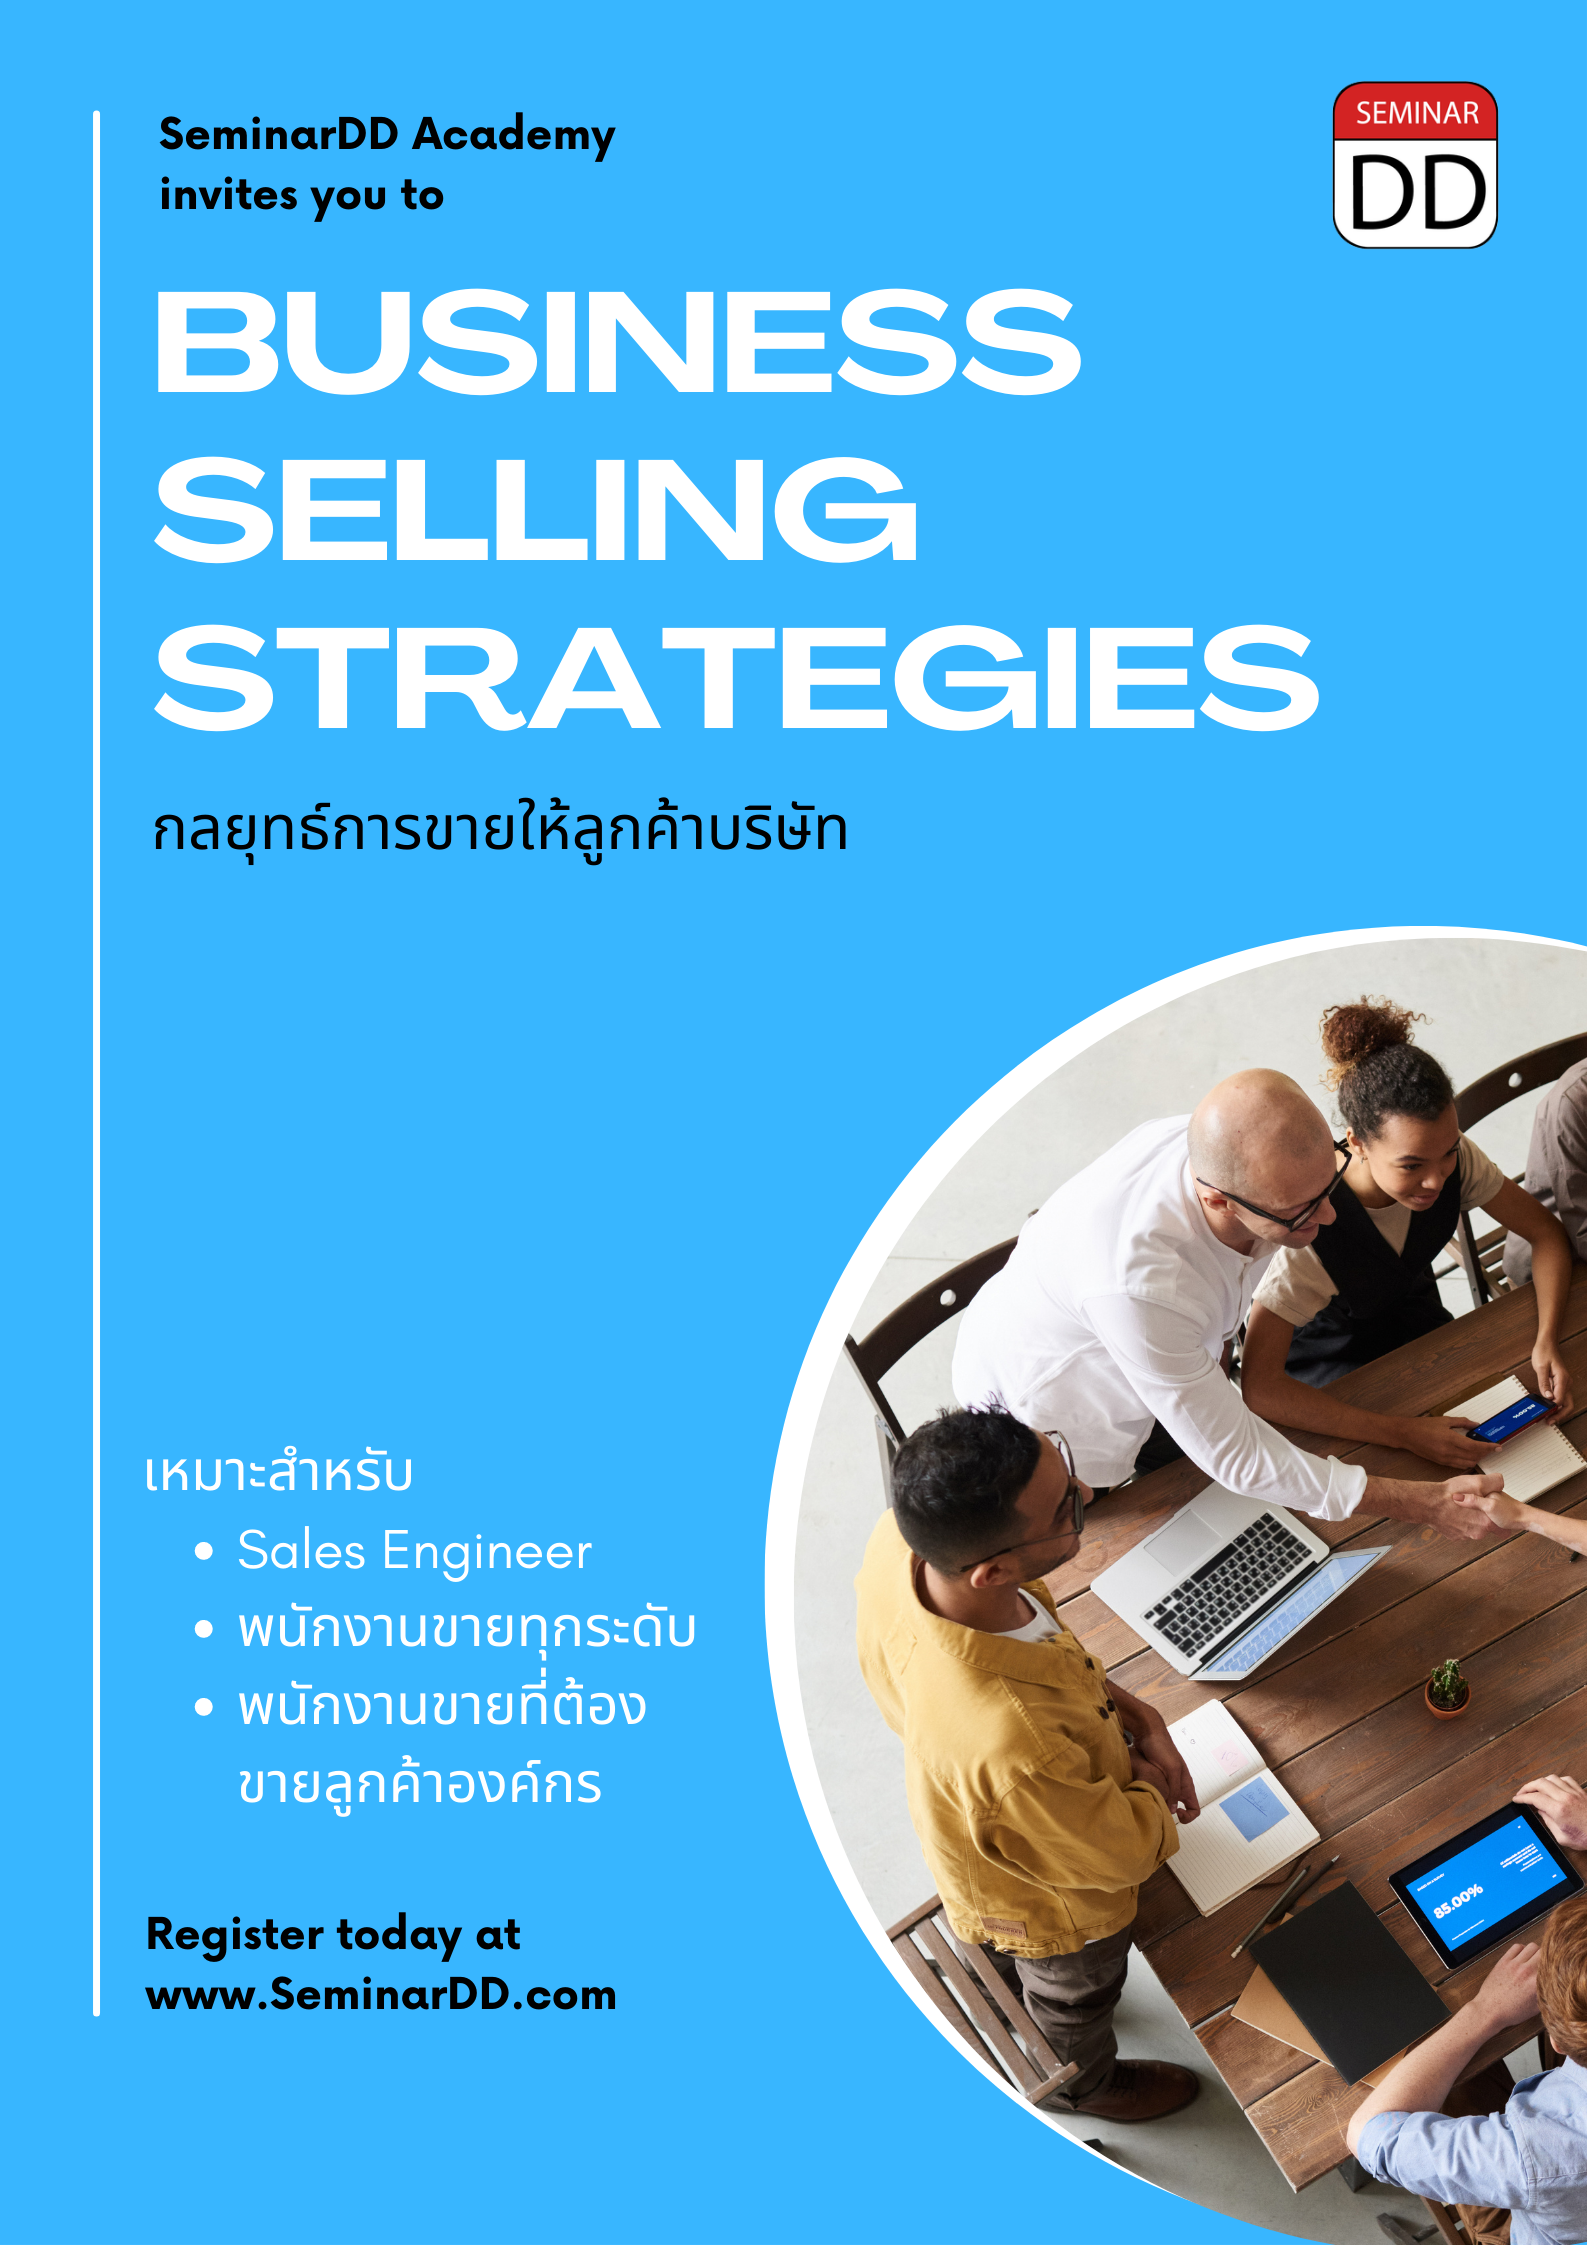 อบรมออนไลน์ผ่าน Zoom หลักสูตร กลยุทธ์การขายให้ลูกค้าบริษัท (Business Selling Strategies)